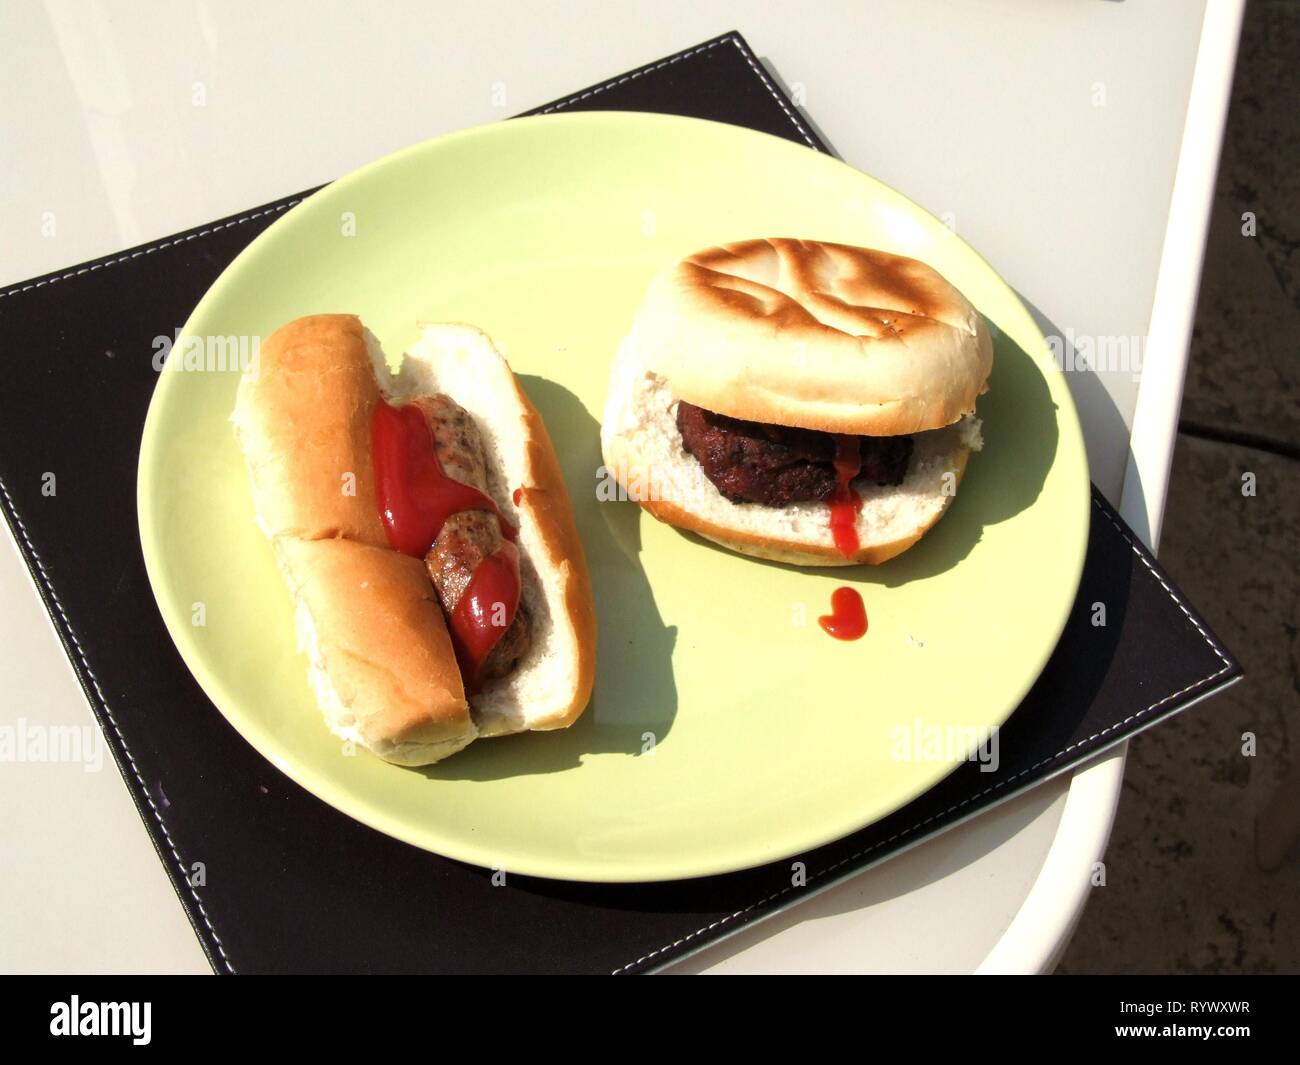 Insaccato in un panino con ketchup e hamburger in un panino con ketchup sulla piastra. Foto Stock